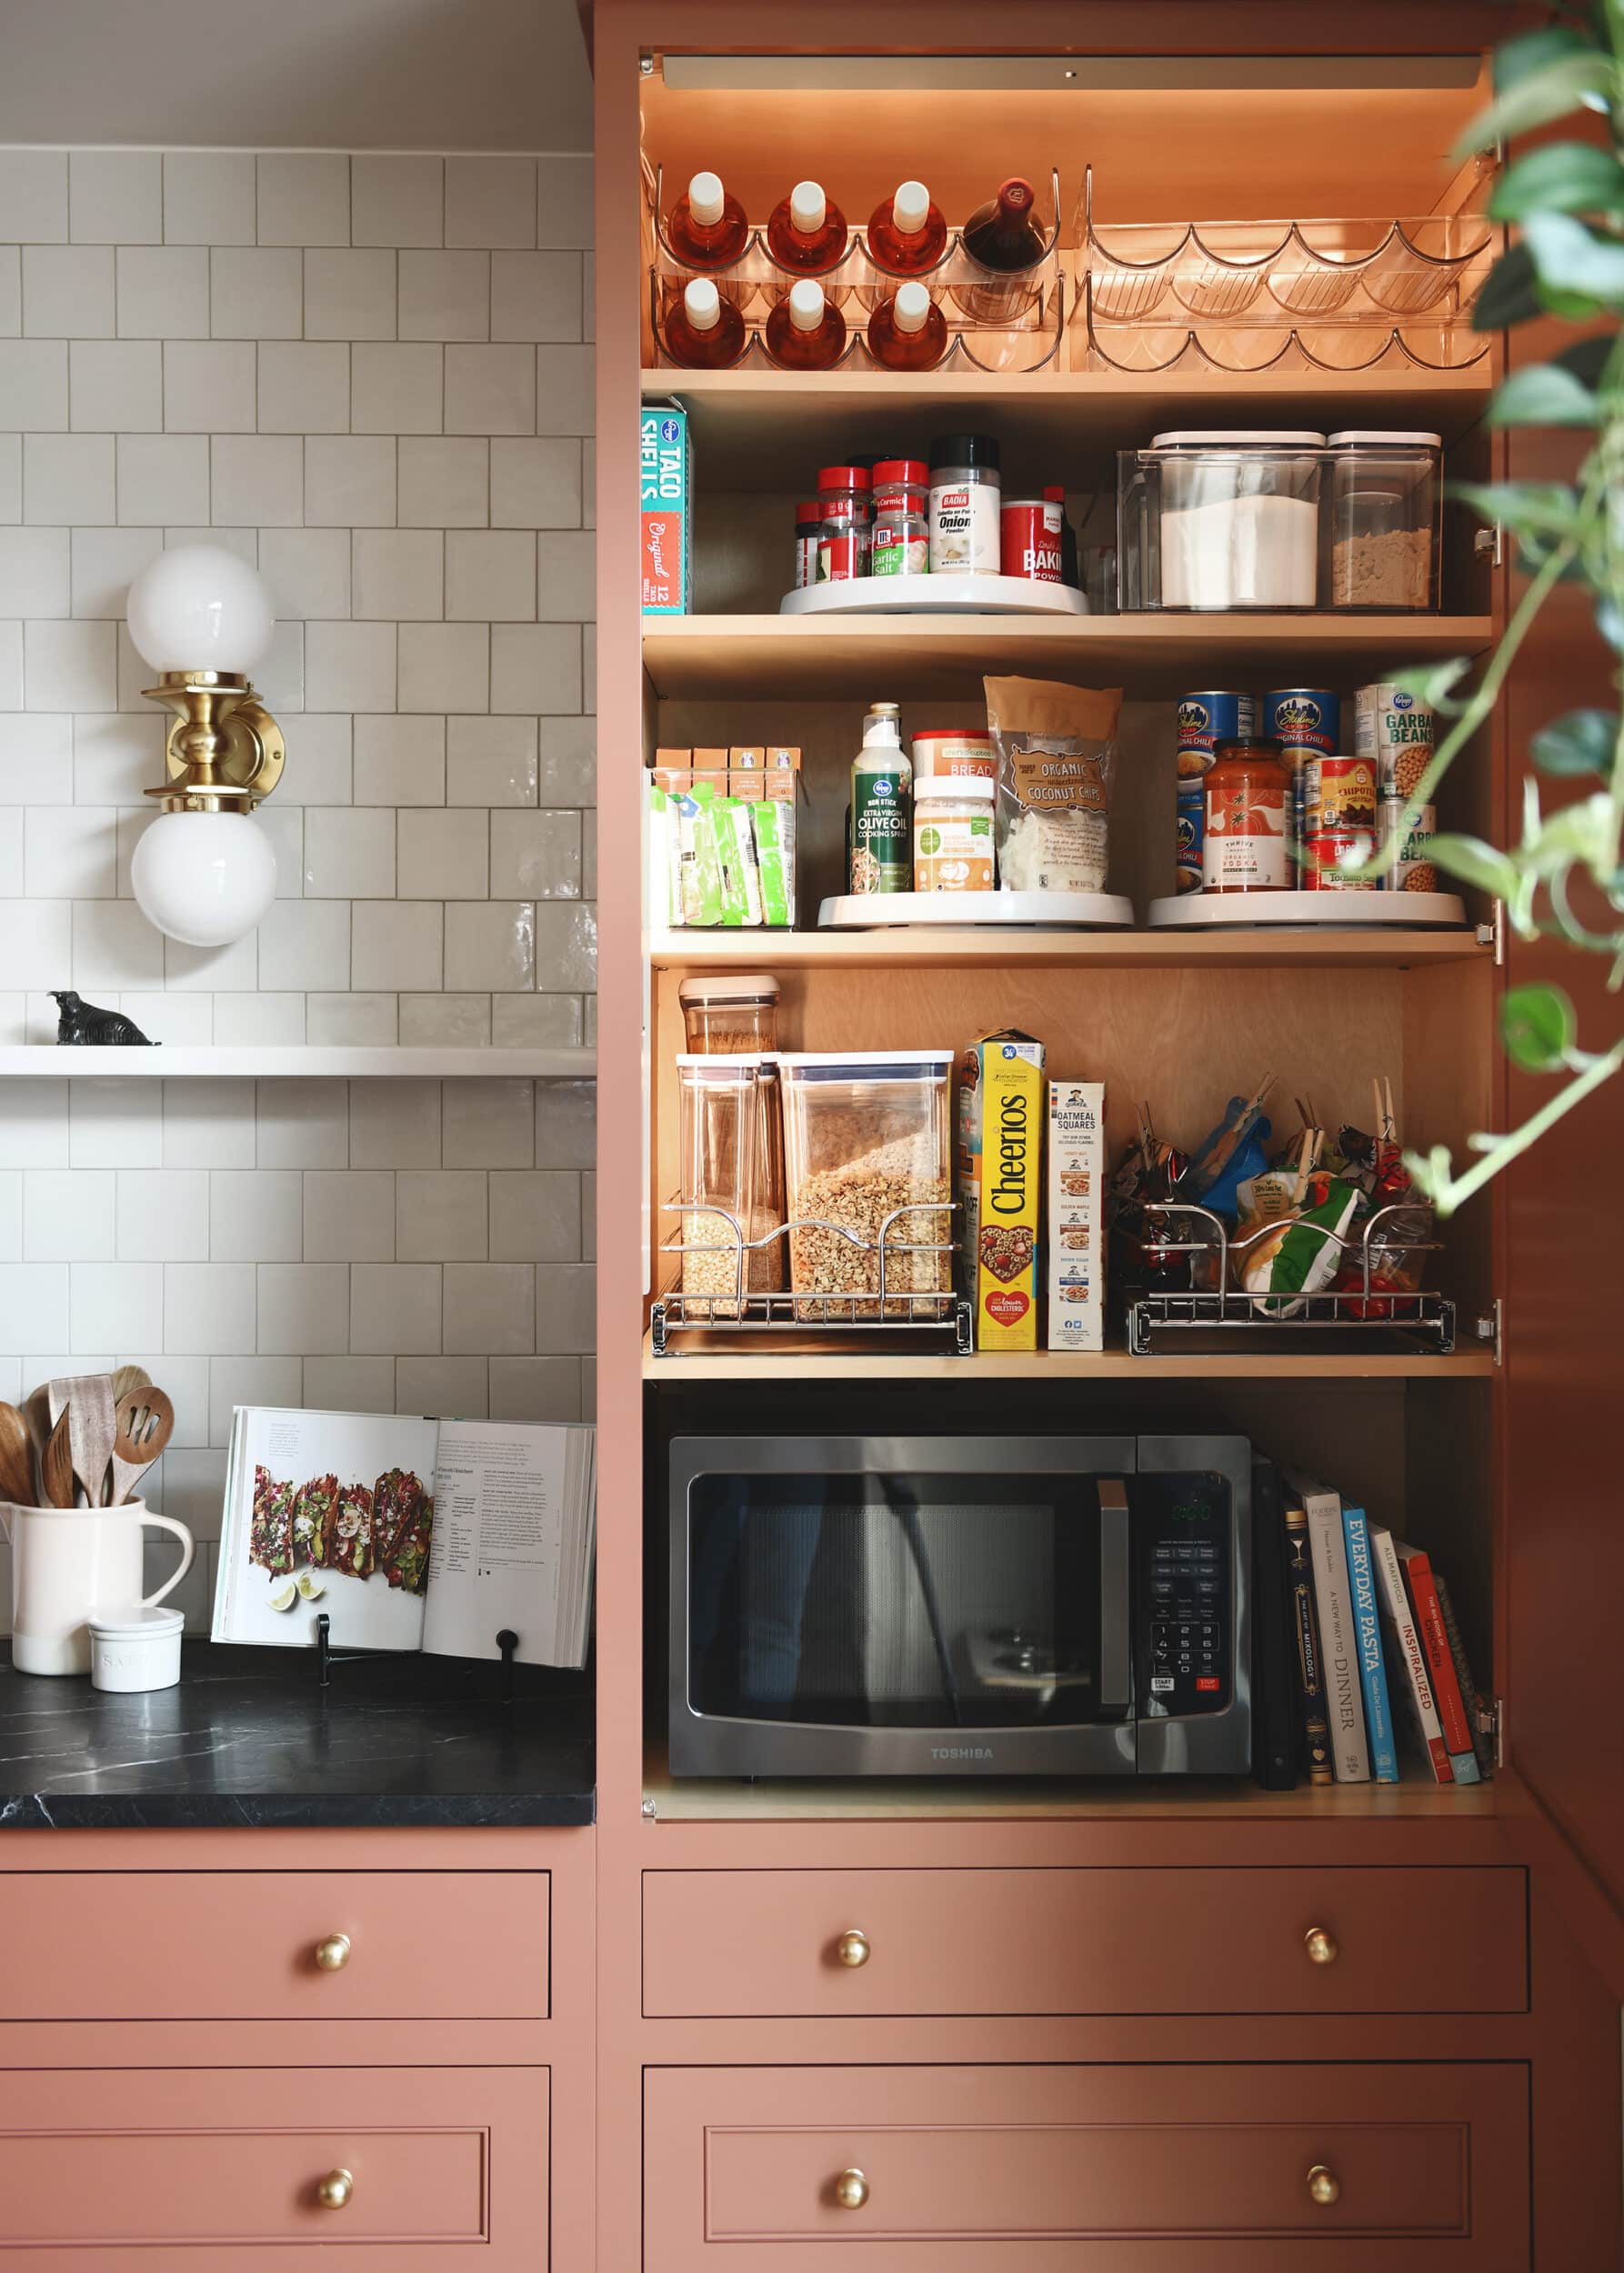 12 Kitchen Cabinet Organization Ideas - How to Organize Kitchen